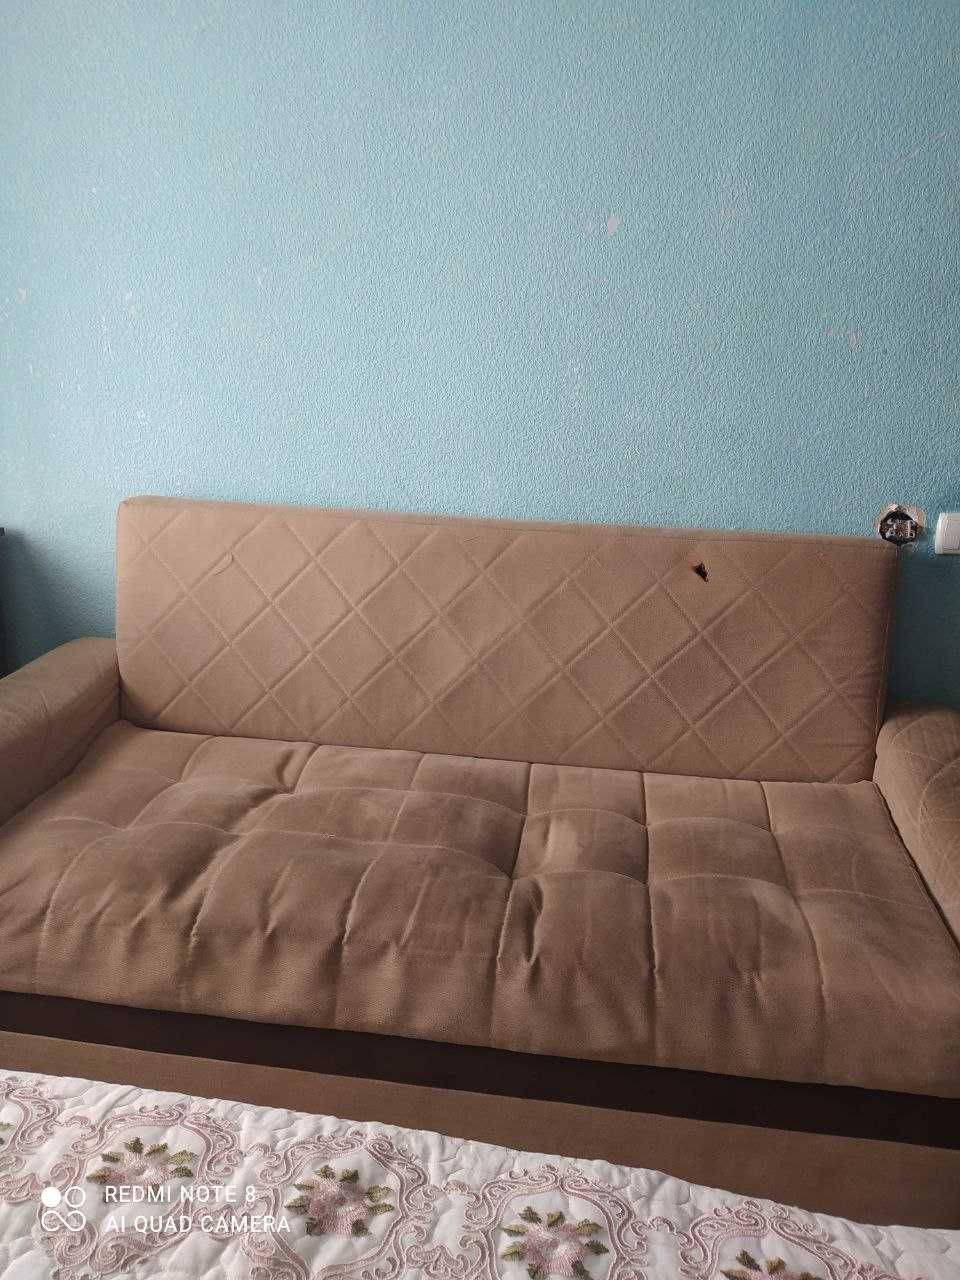 Продается мини диван